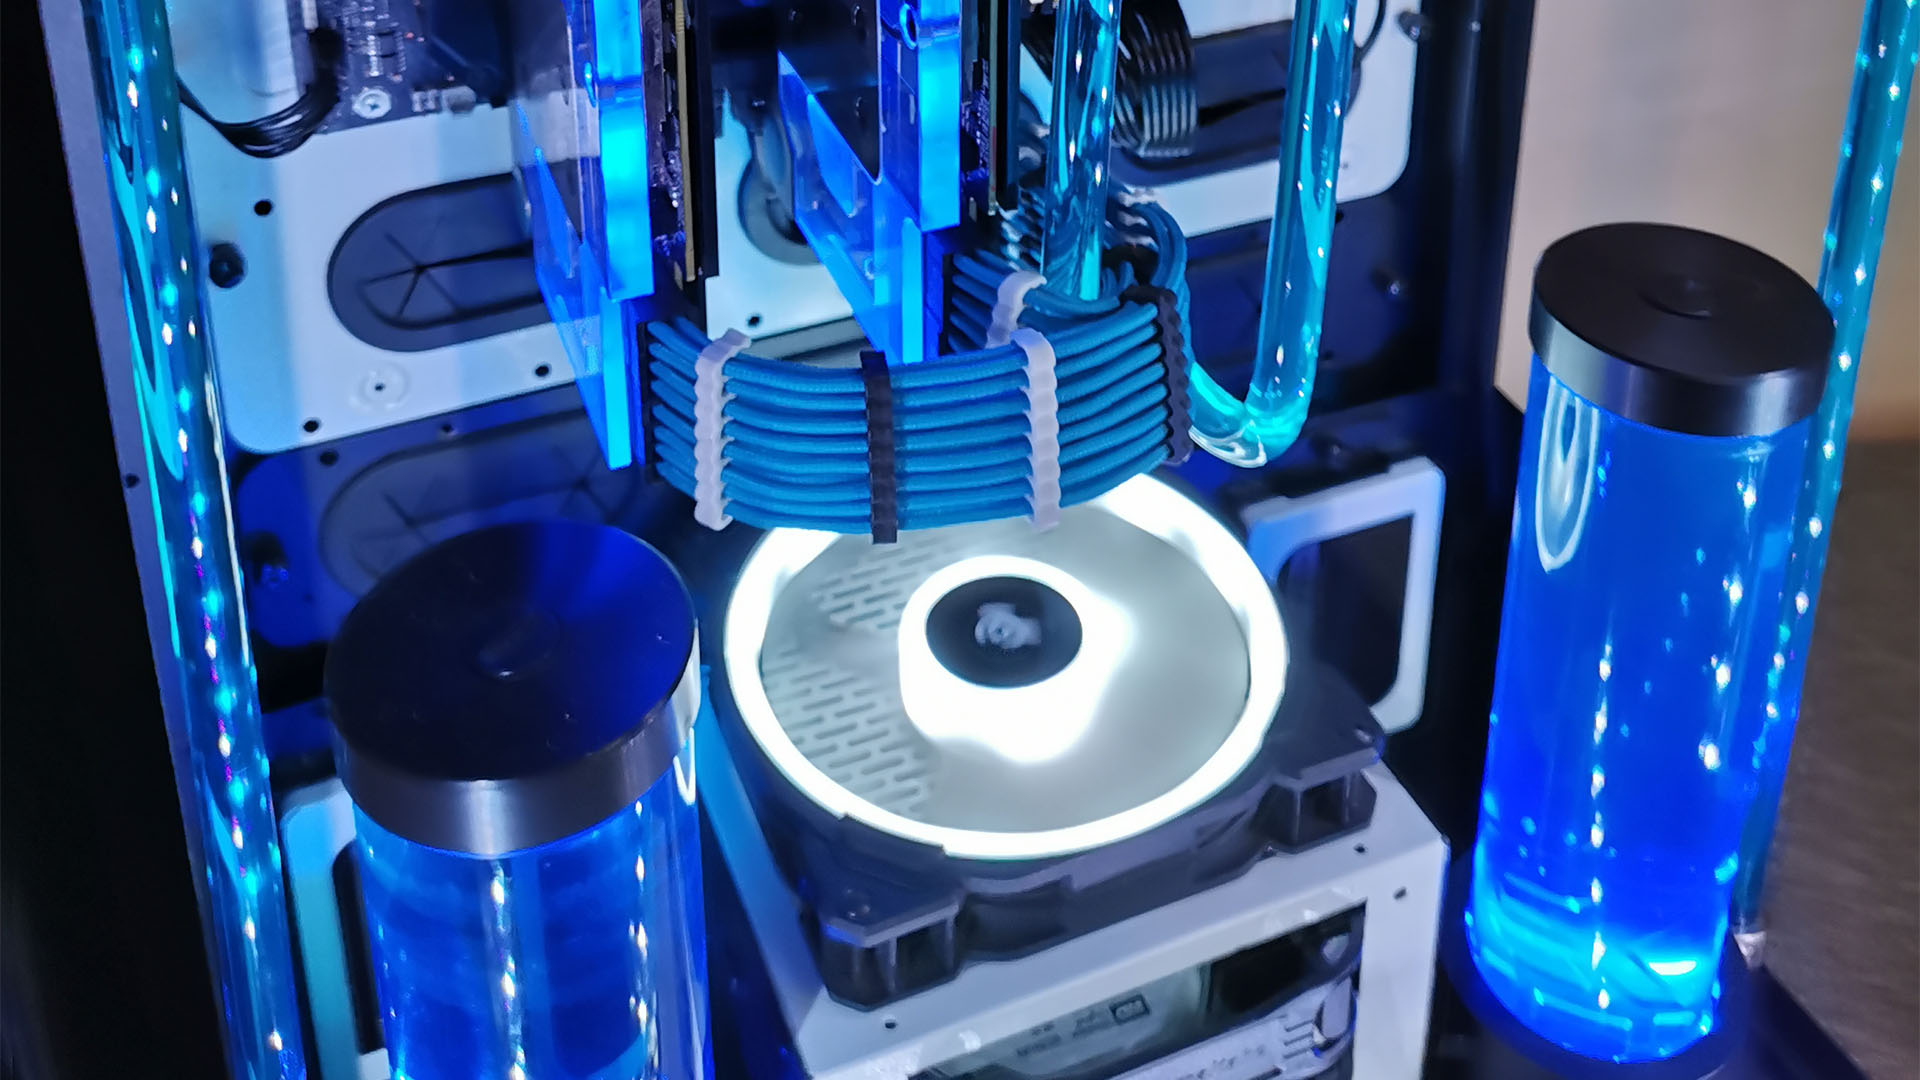 La PC para juegos refrigerada por agua dentro de una carcasa azul Thermaltake Tower 900